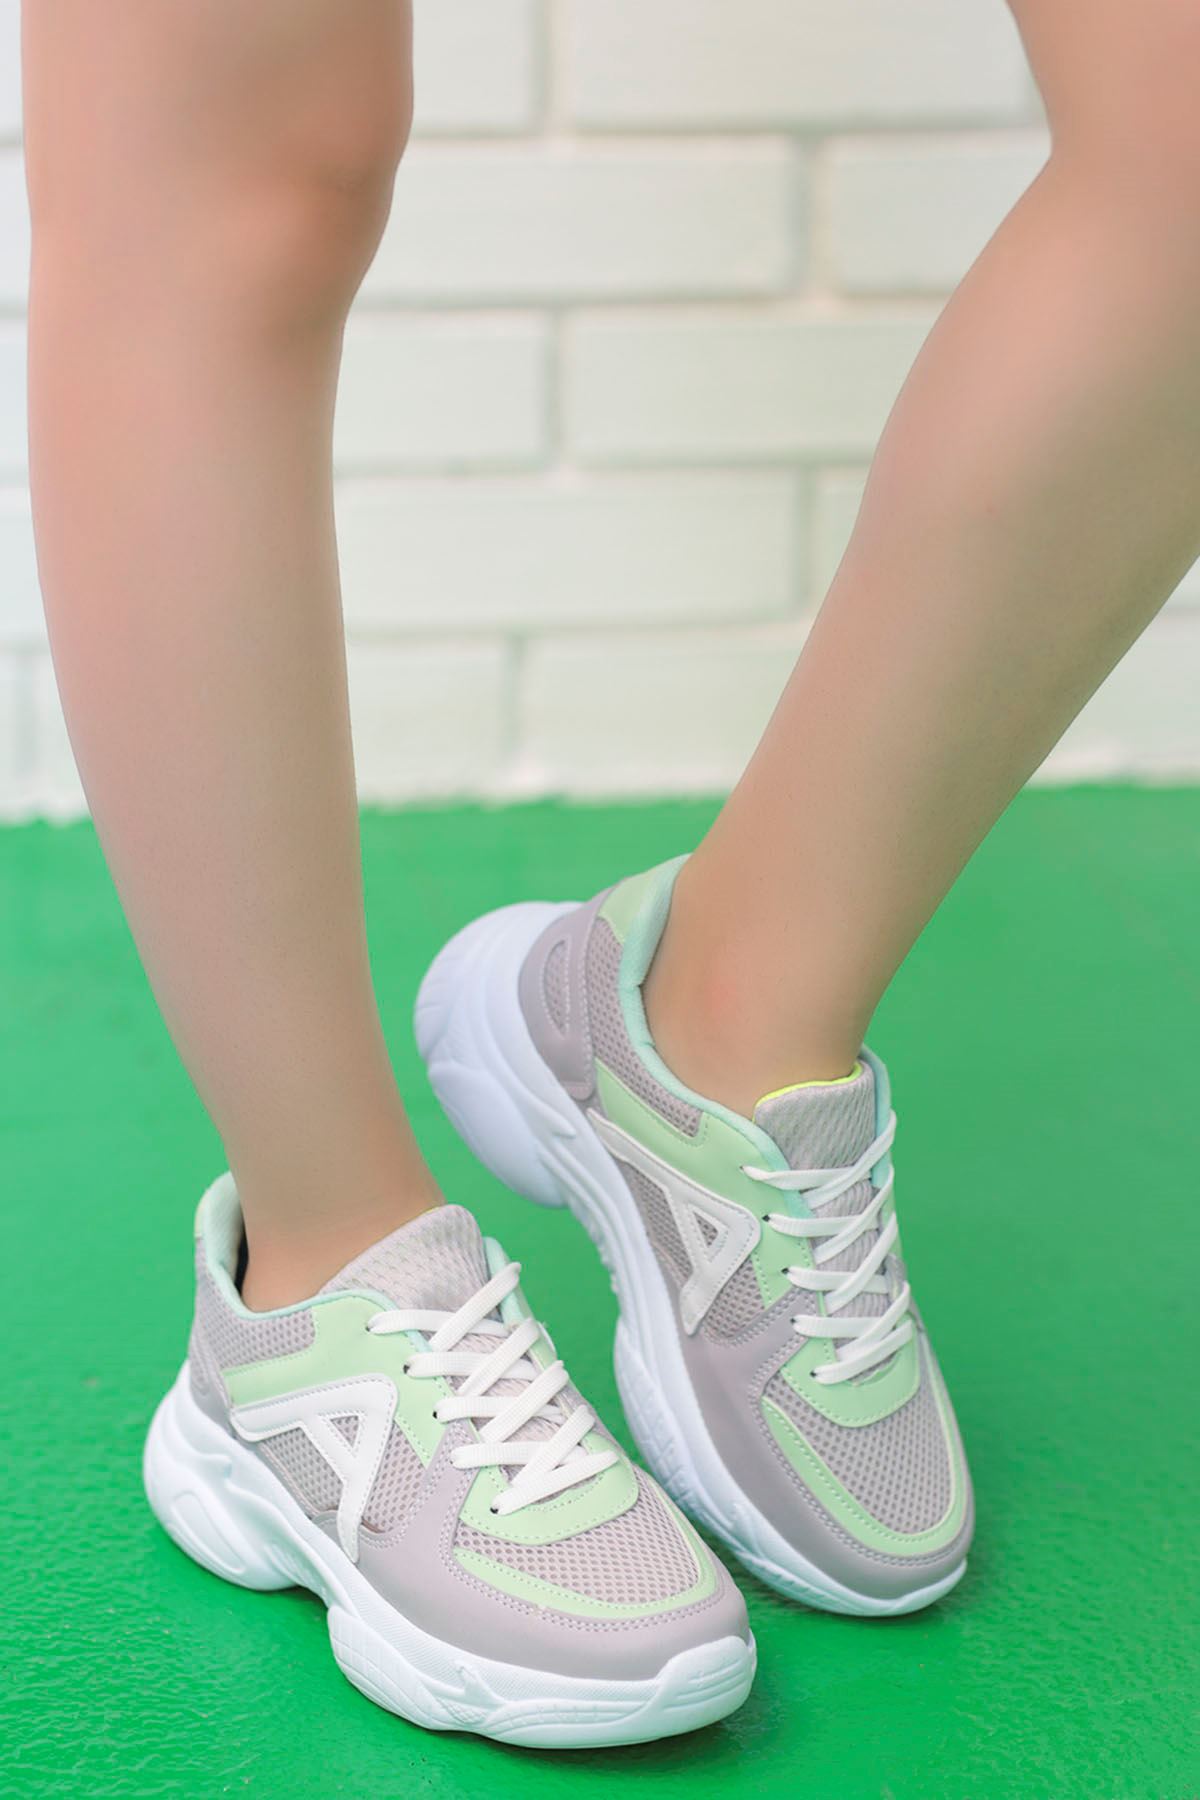 Afra A Detay Spor Ayakkabı Gri Yeşil Detay